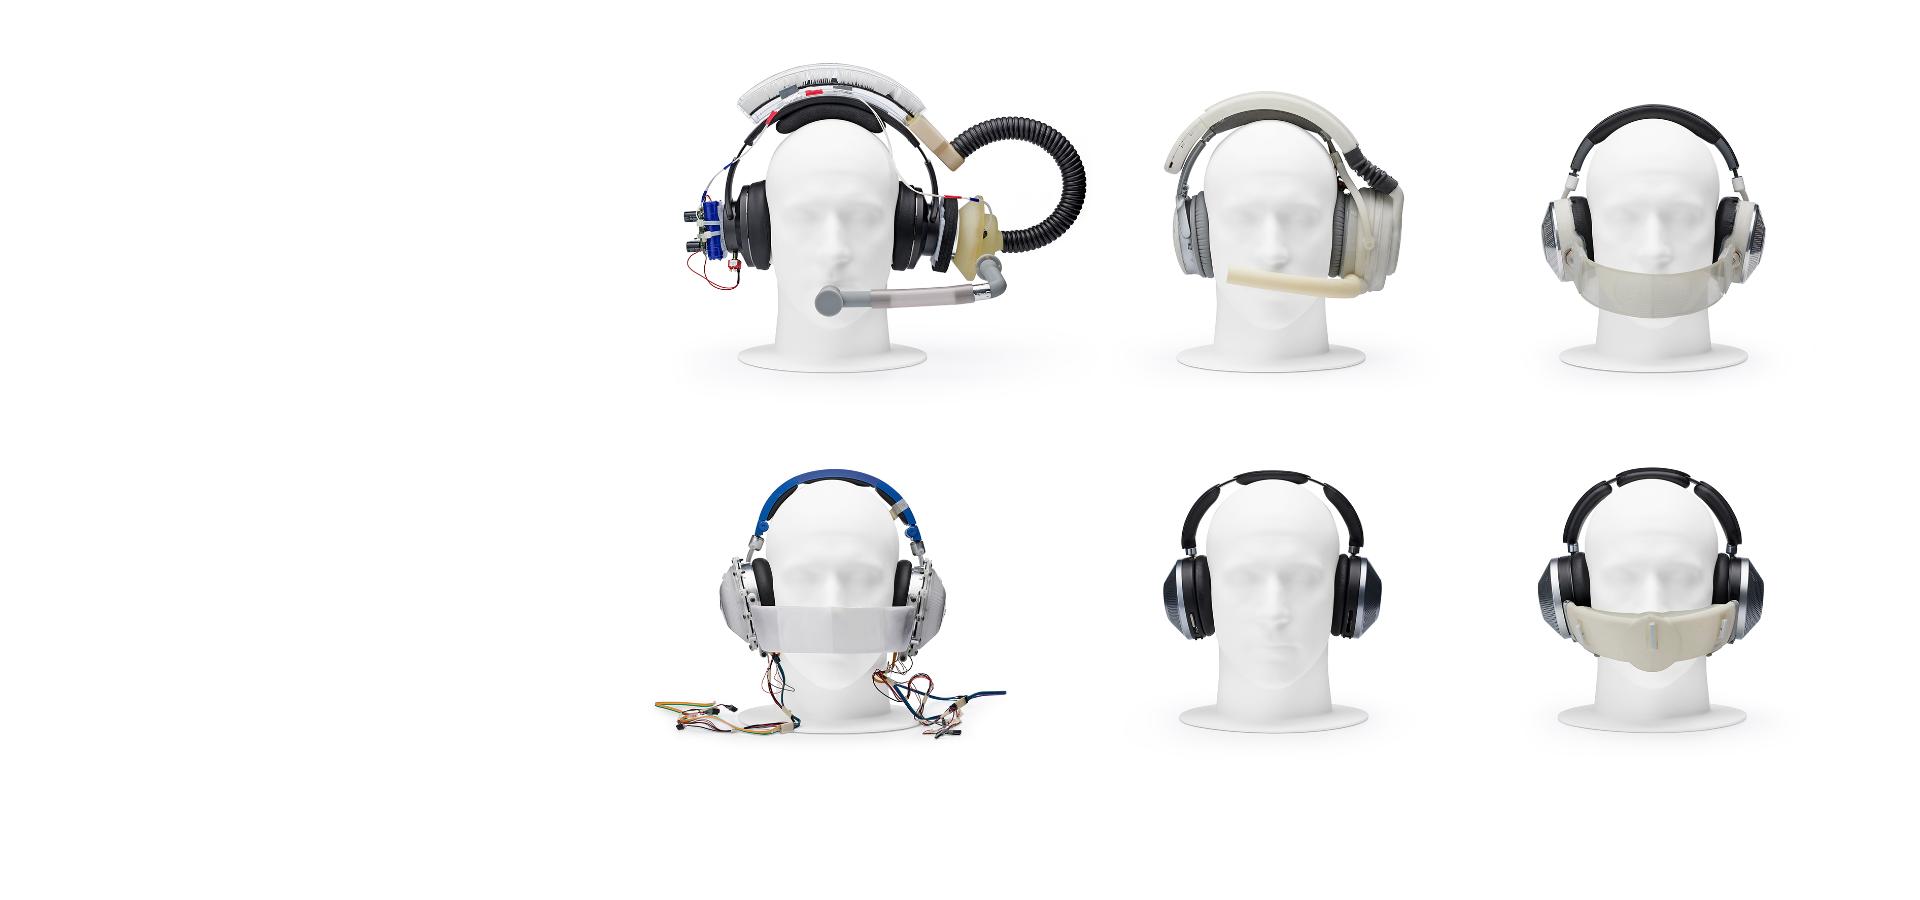 Bốn đầu ma-nơ-canh đang đeo các tai nghe nguyên mẫu khác nhau.